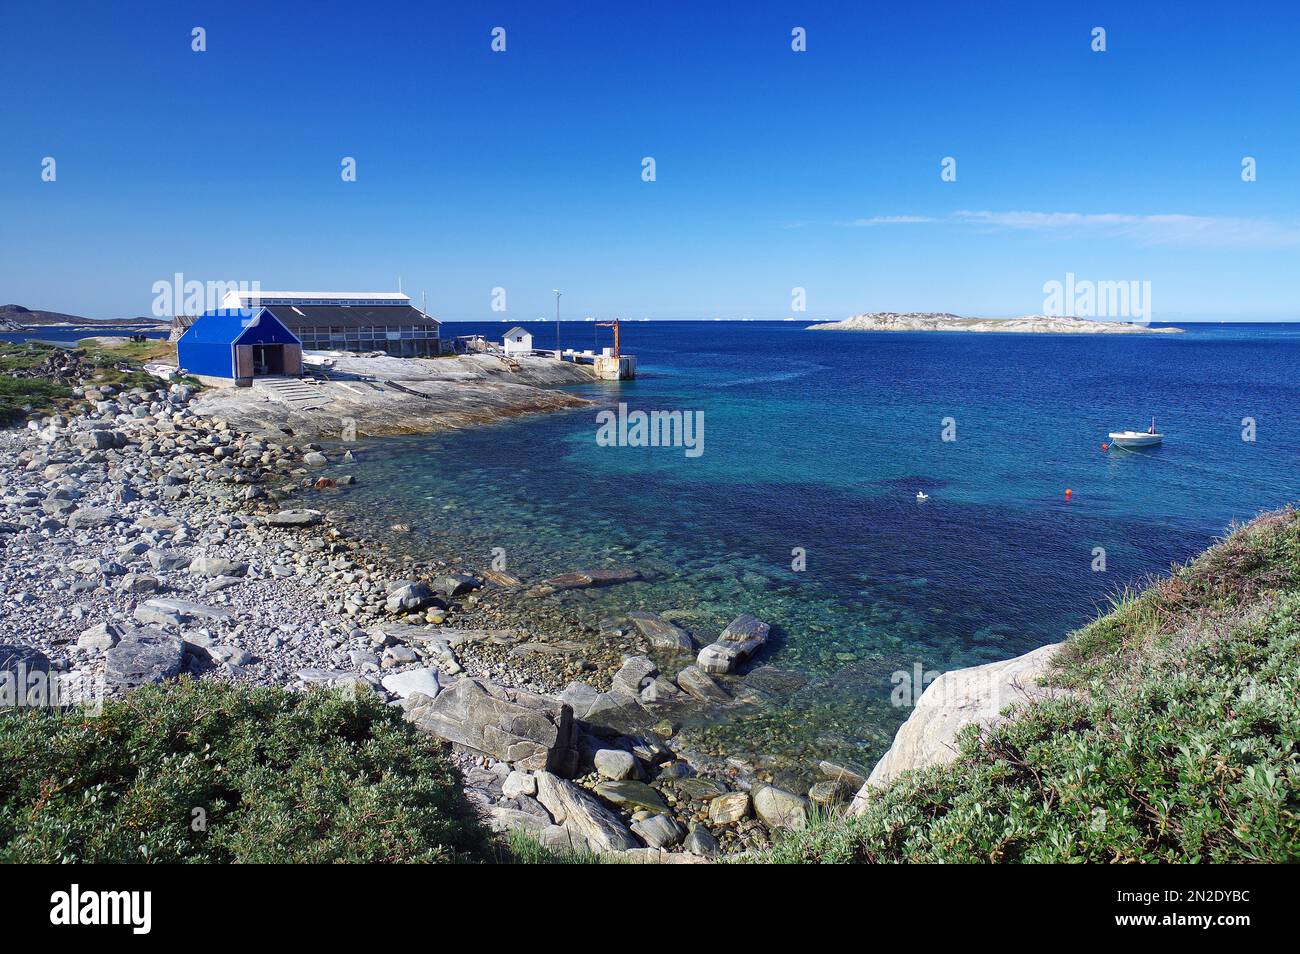 Large baie avec plage de pierre, ancienne usine de poissons, Ilimanaq, Disko Bay, Avanaata Kommunia, Arctique, Groenland, Danemark Banque D'Images